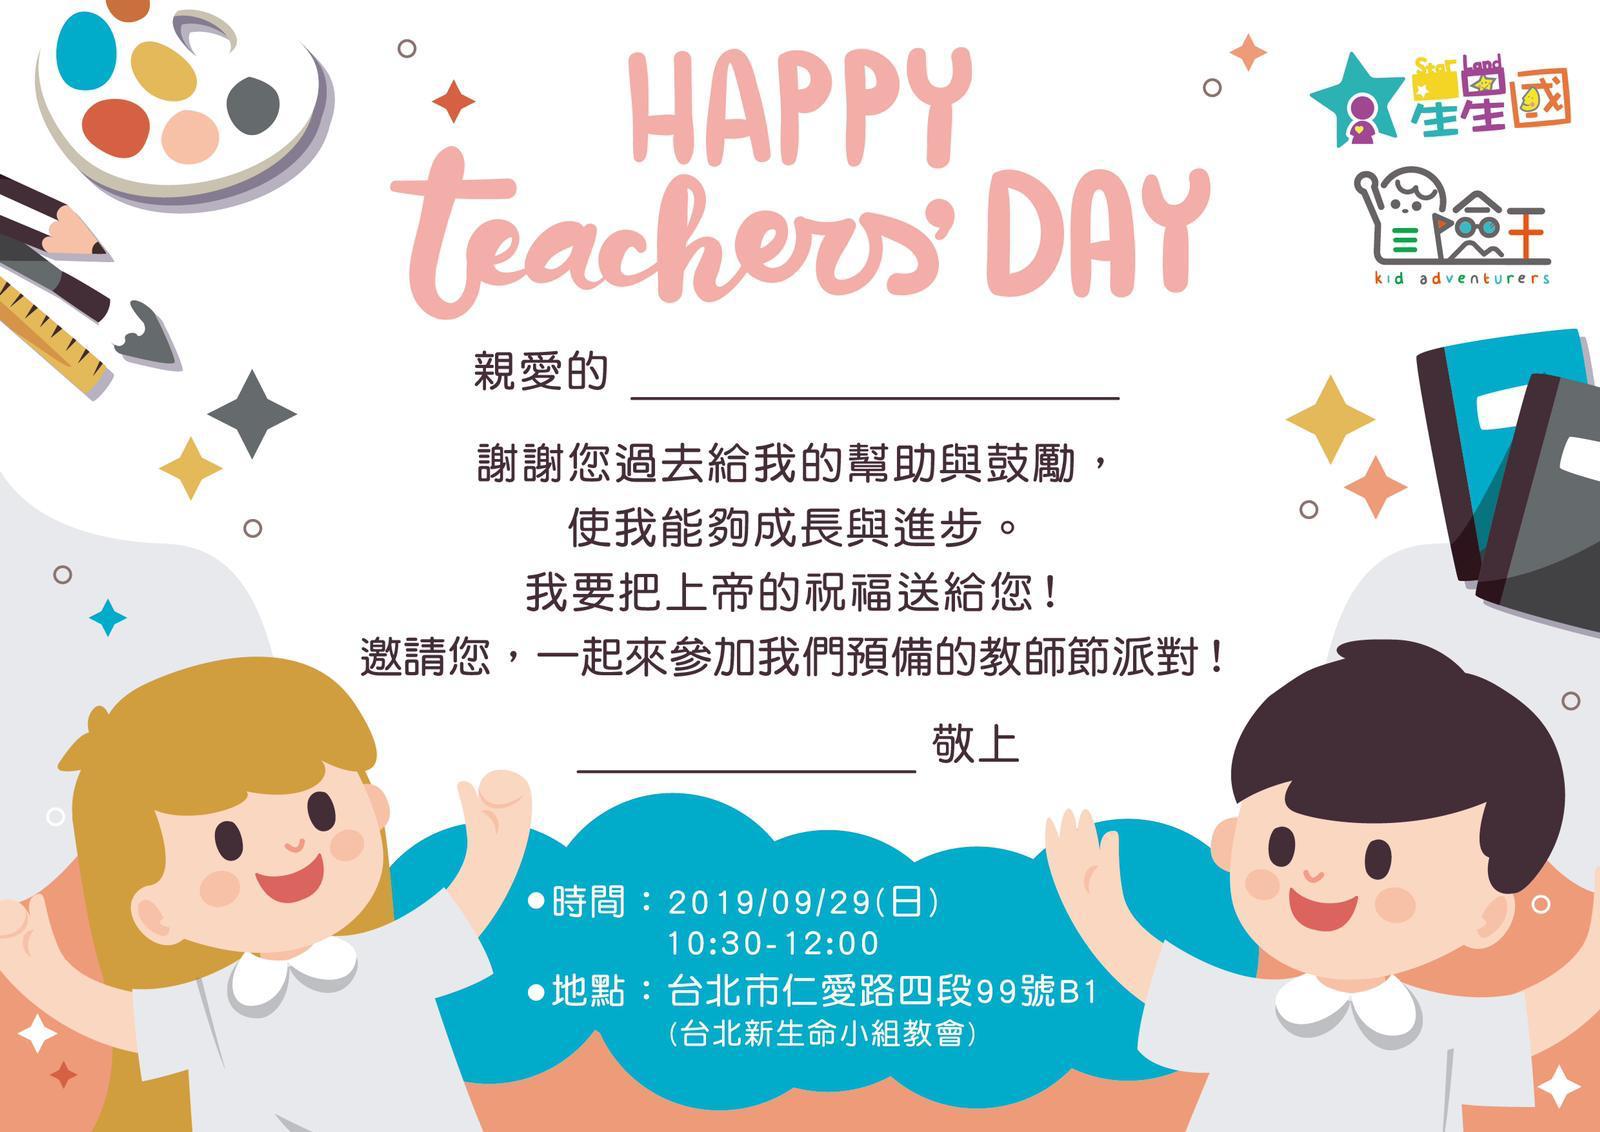 【資訊公告】Happy Teachers&#8217; Day 歡慶教師節